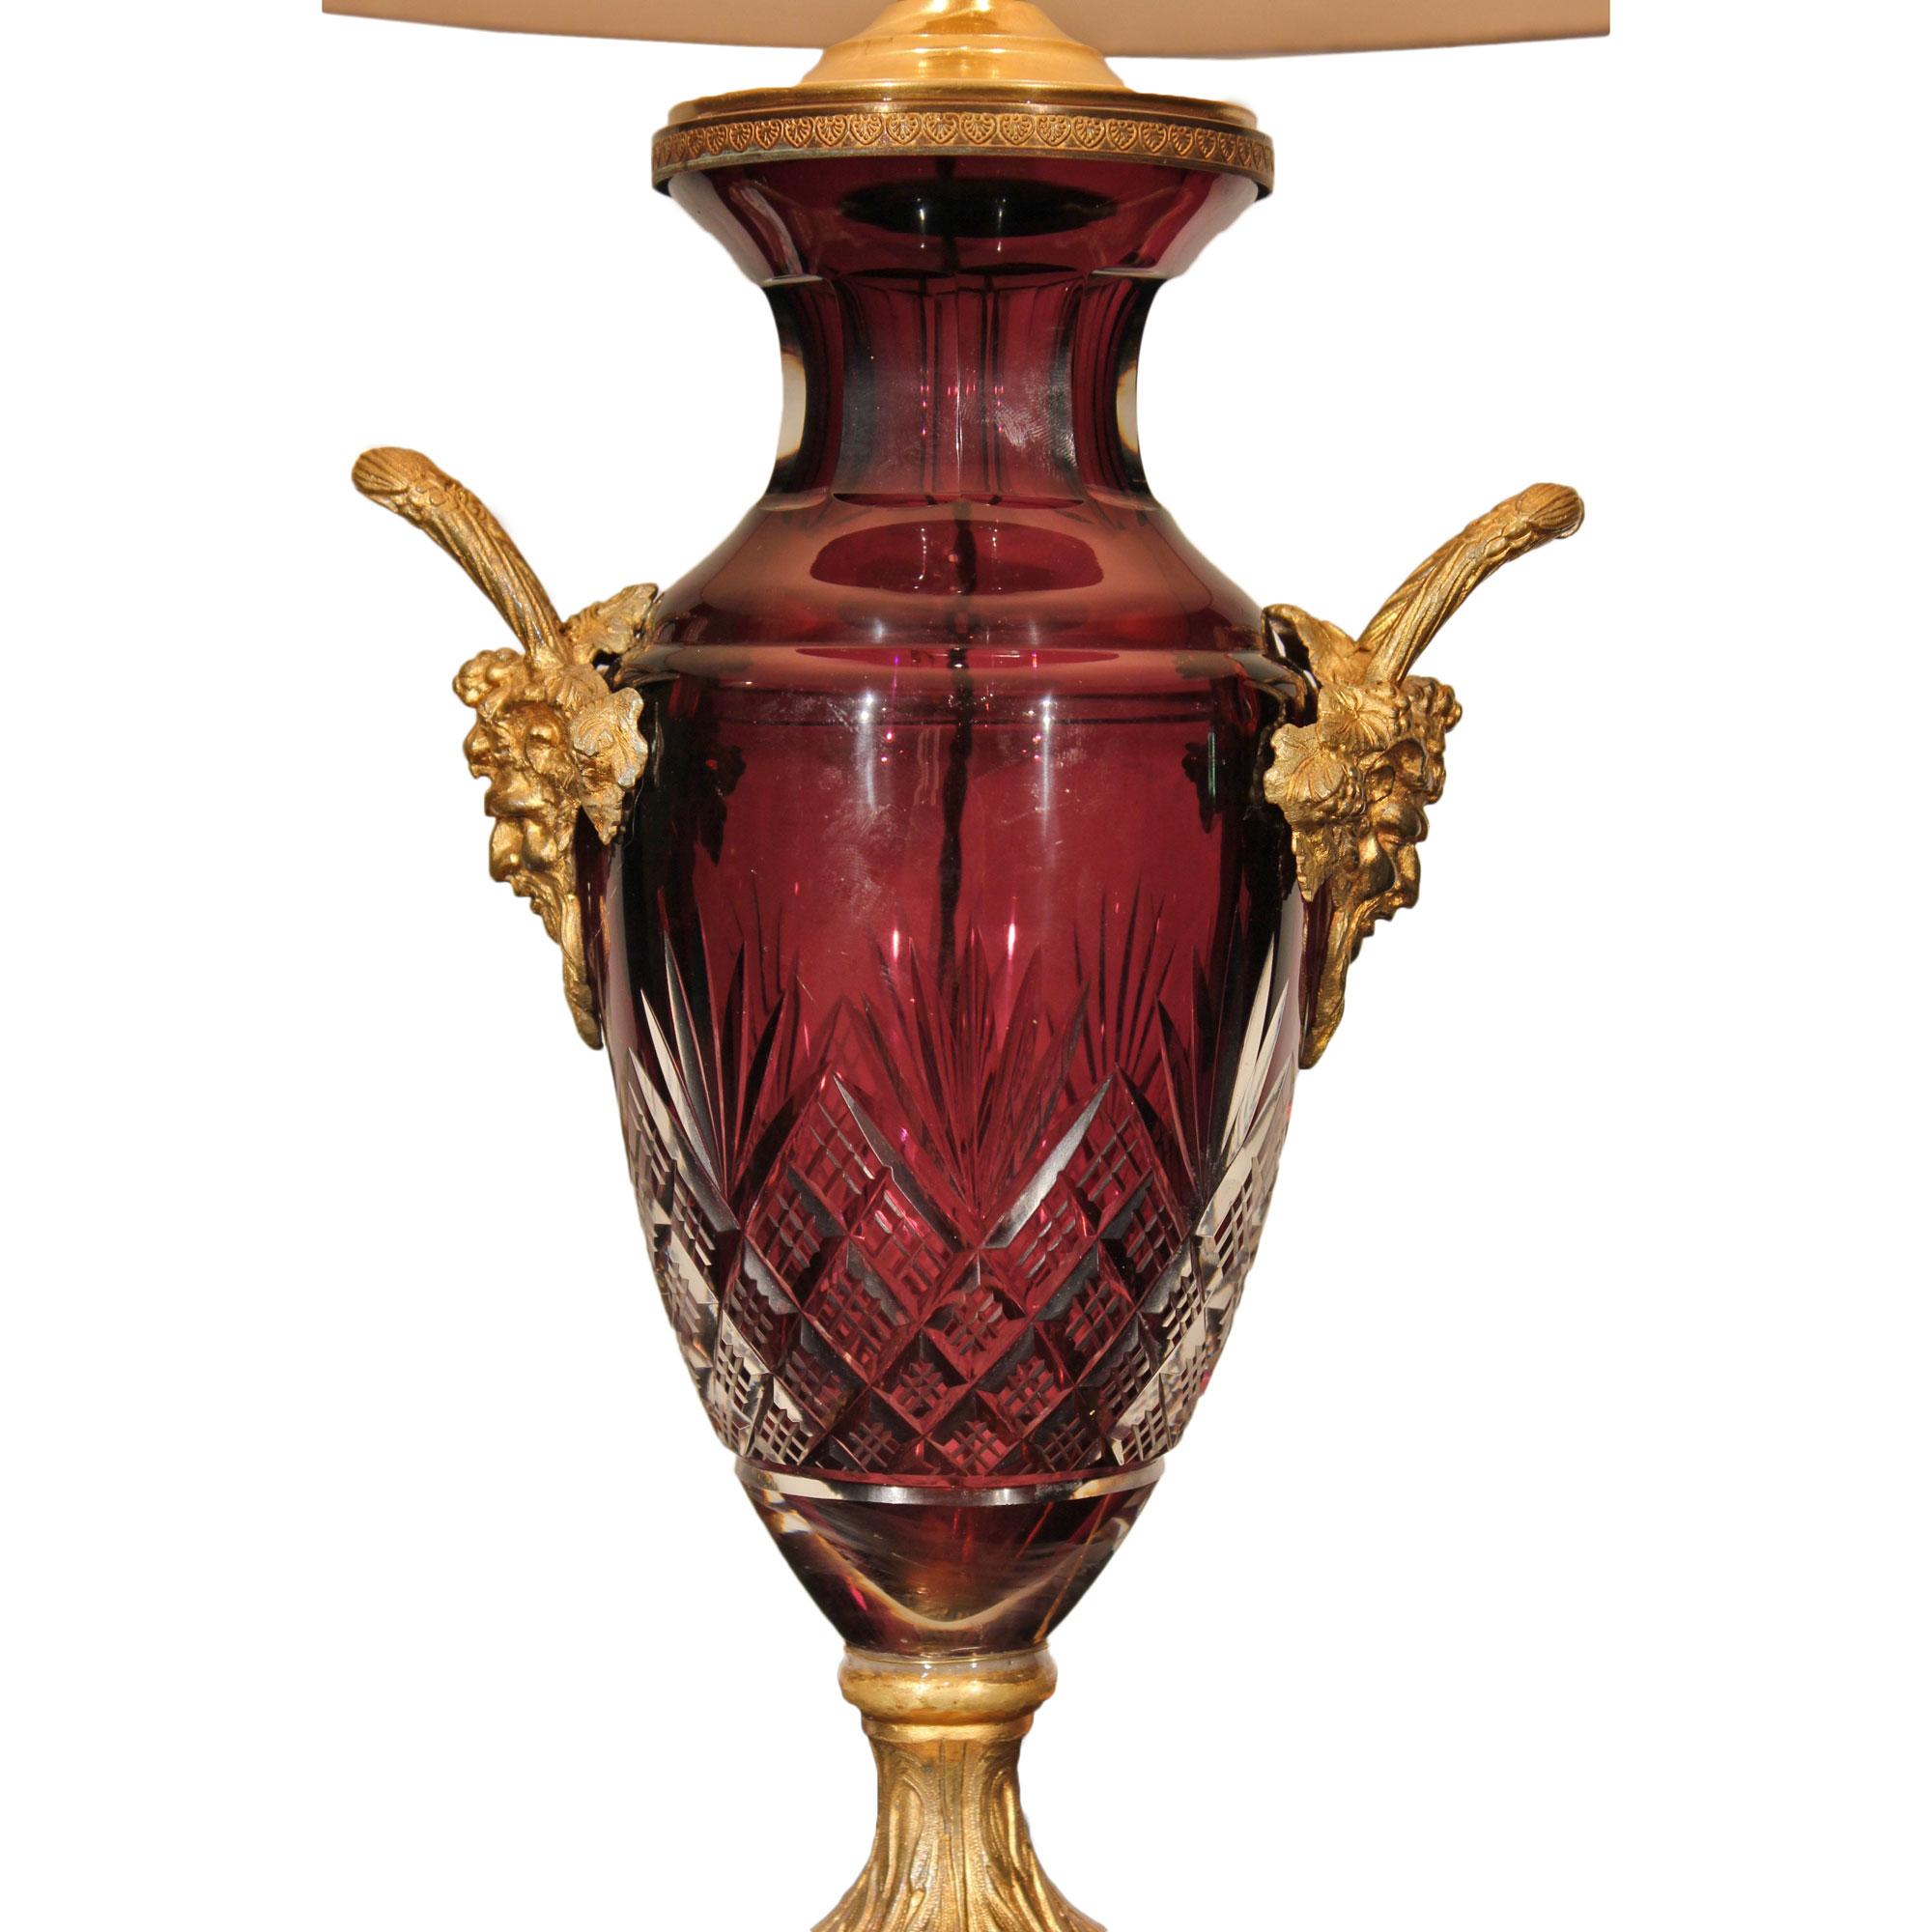 Une très belle urne française du 19ème siècle en cristal taillé de style Louis XVI montée en lampe. La lampe repose sur une base carrée avec un piédestal en bronze doré richement ciselé. Ci-dessus, l'urne en forme de balustre en cristal